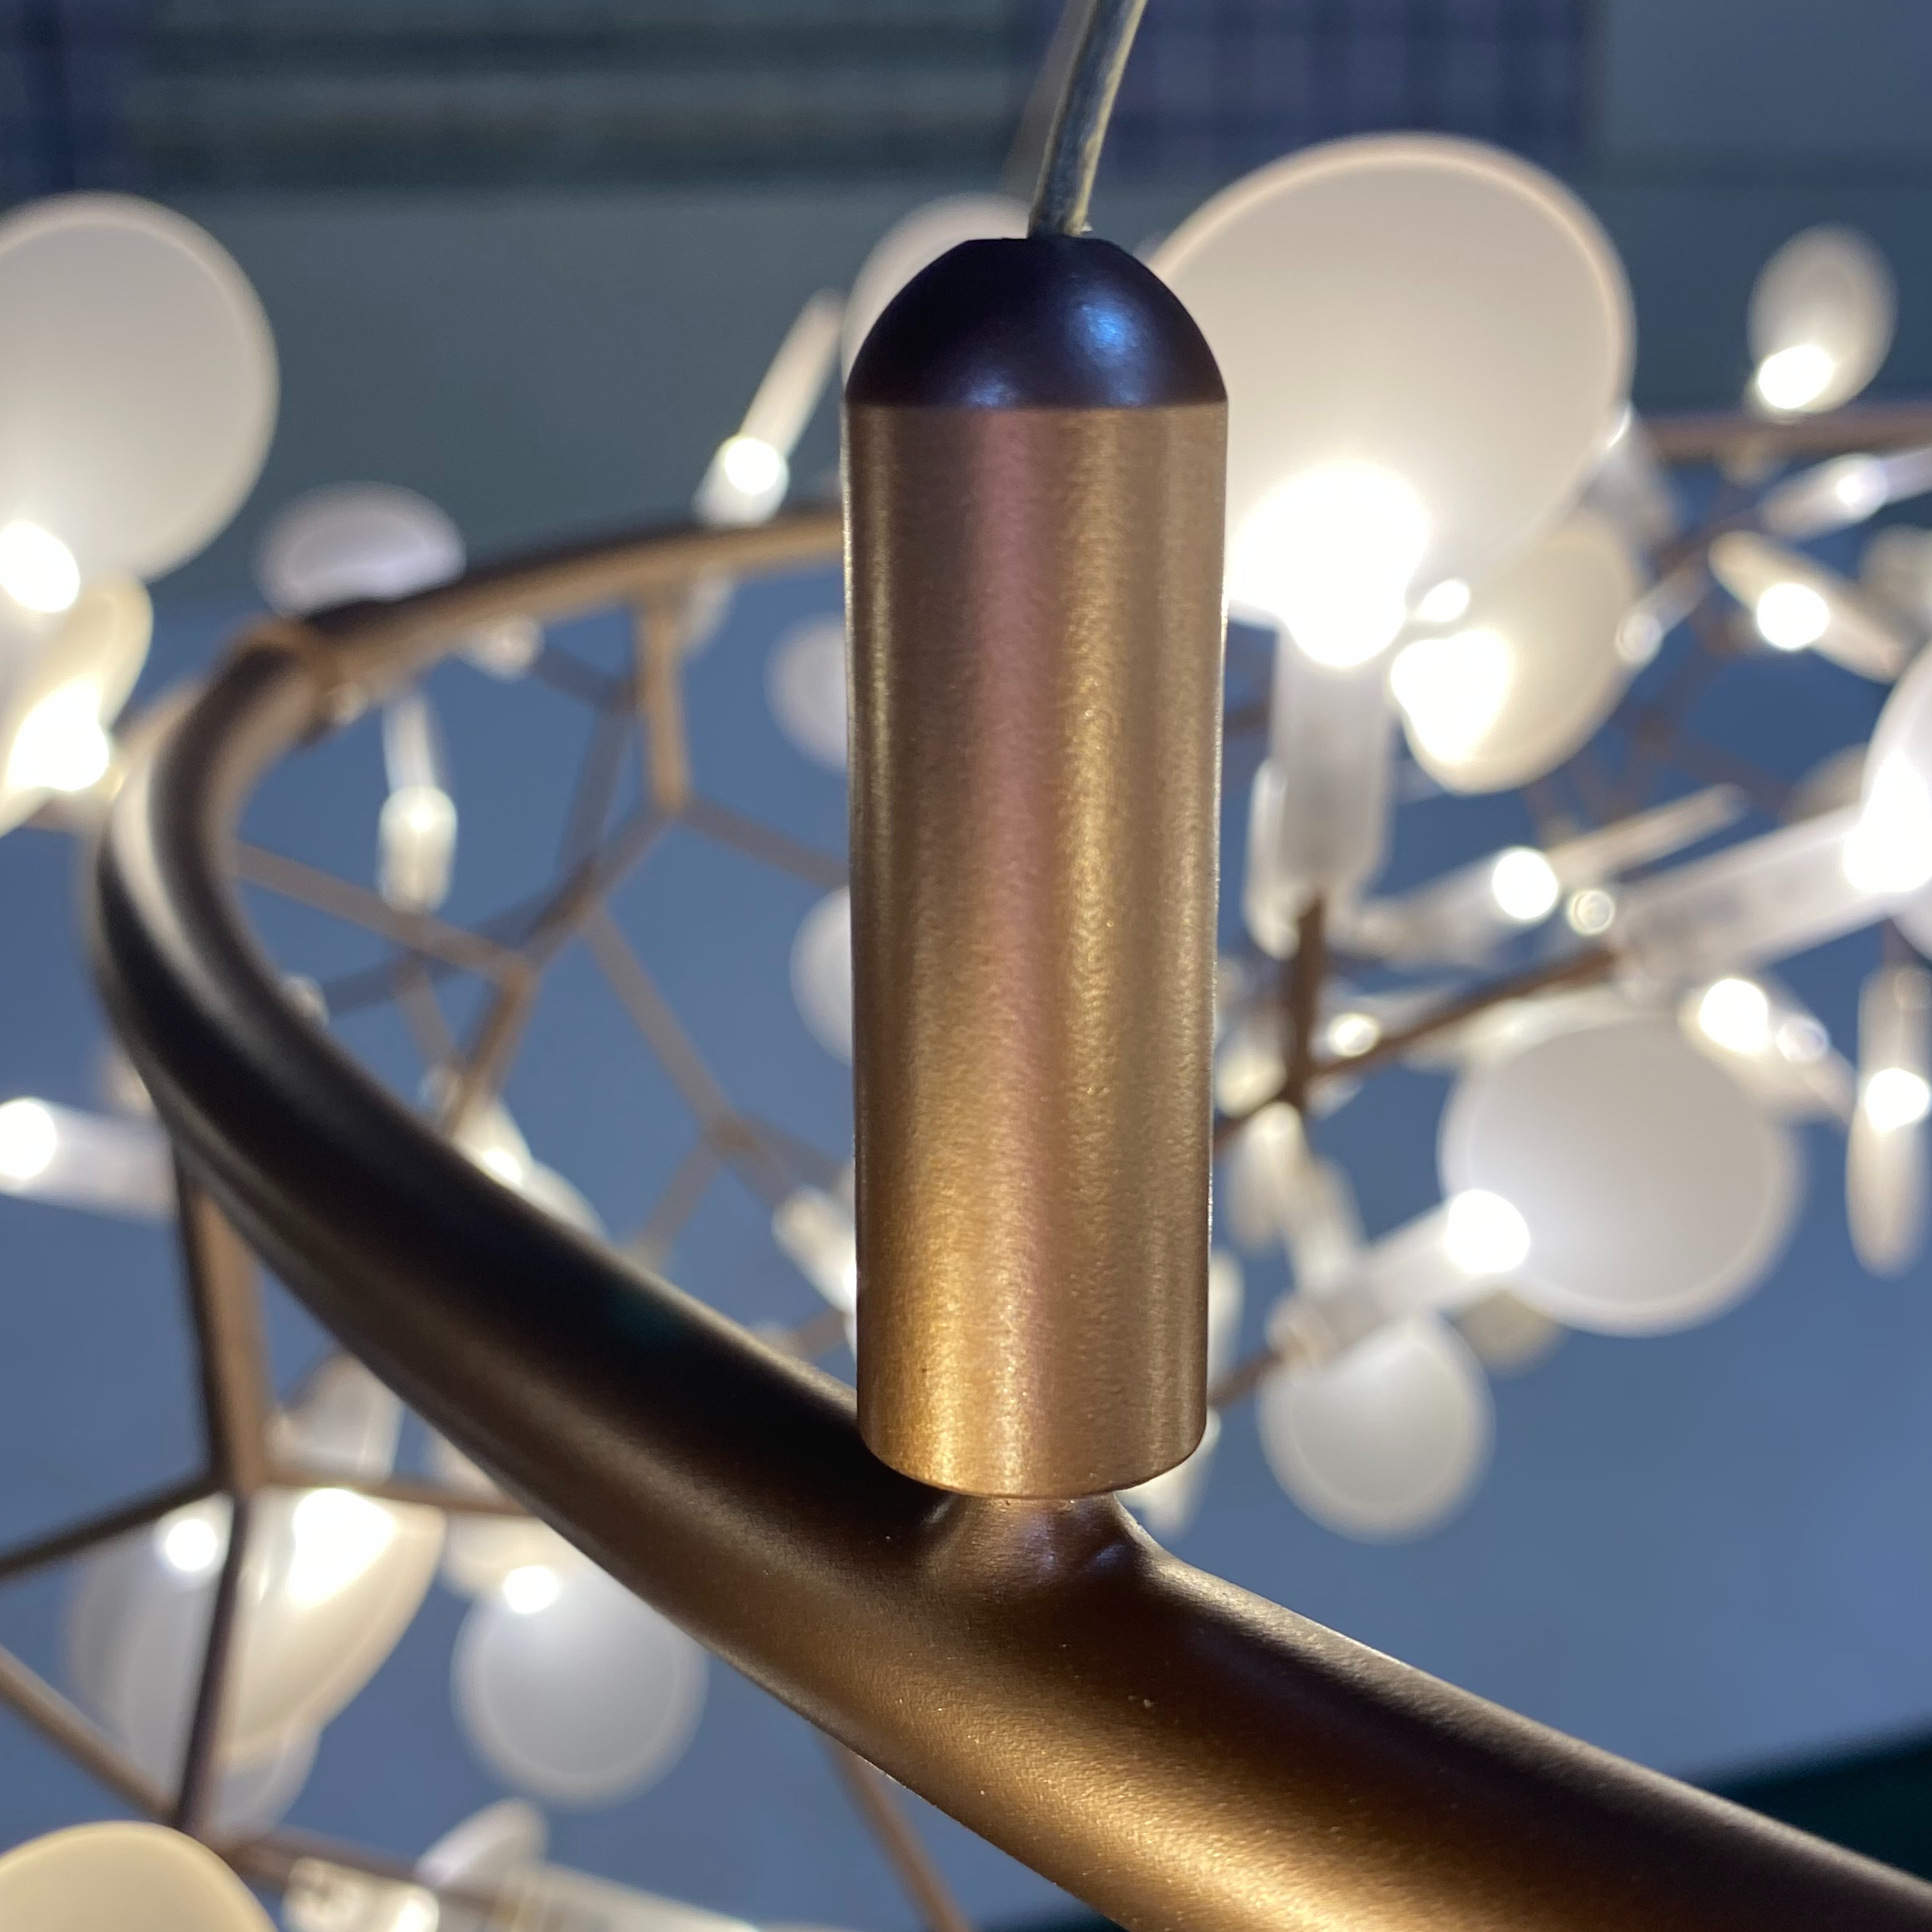 Comtemporary Bedroom Indoor Decorative Metal Acrylic Pendant Light (KIZ-67P)